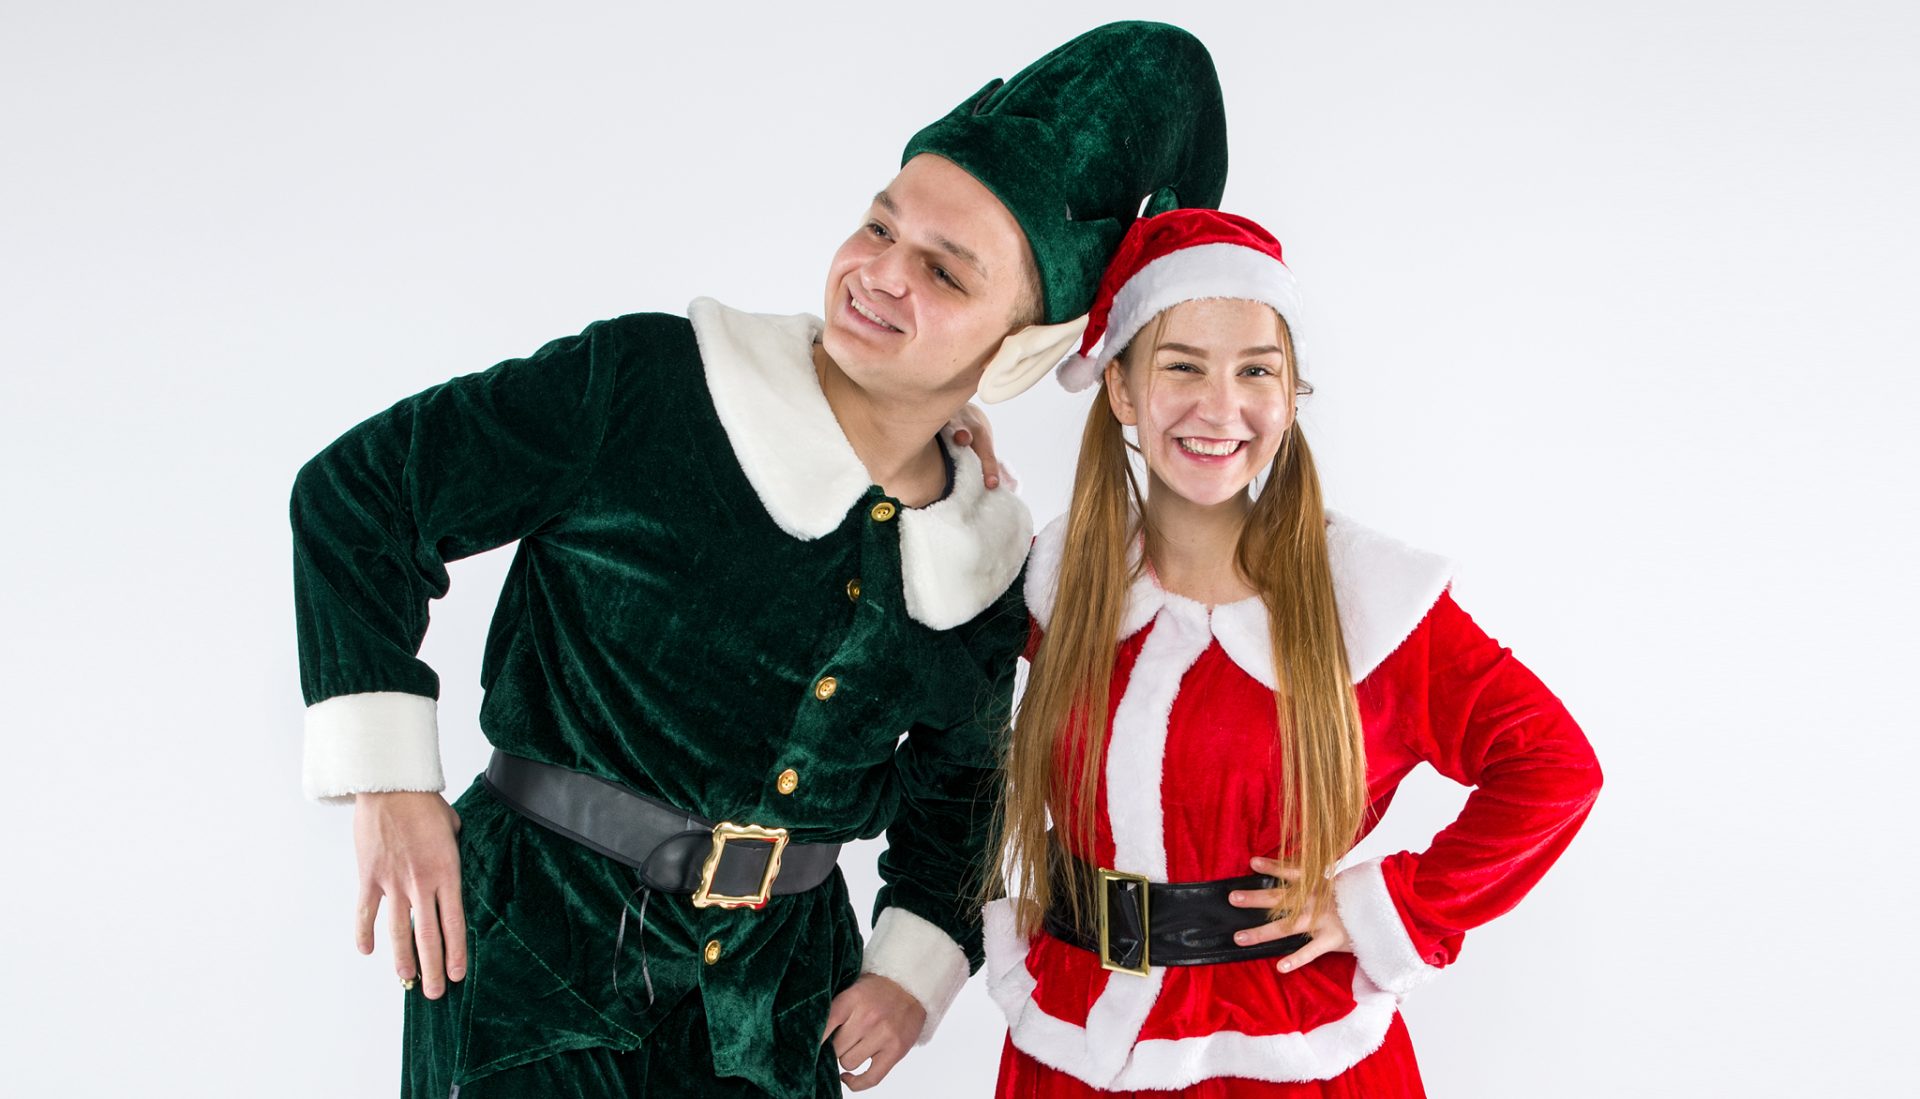 MiMiDO Kalėdos - Kalėdų programa su elfu ir snieguole